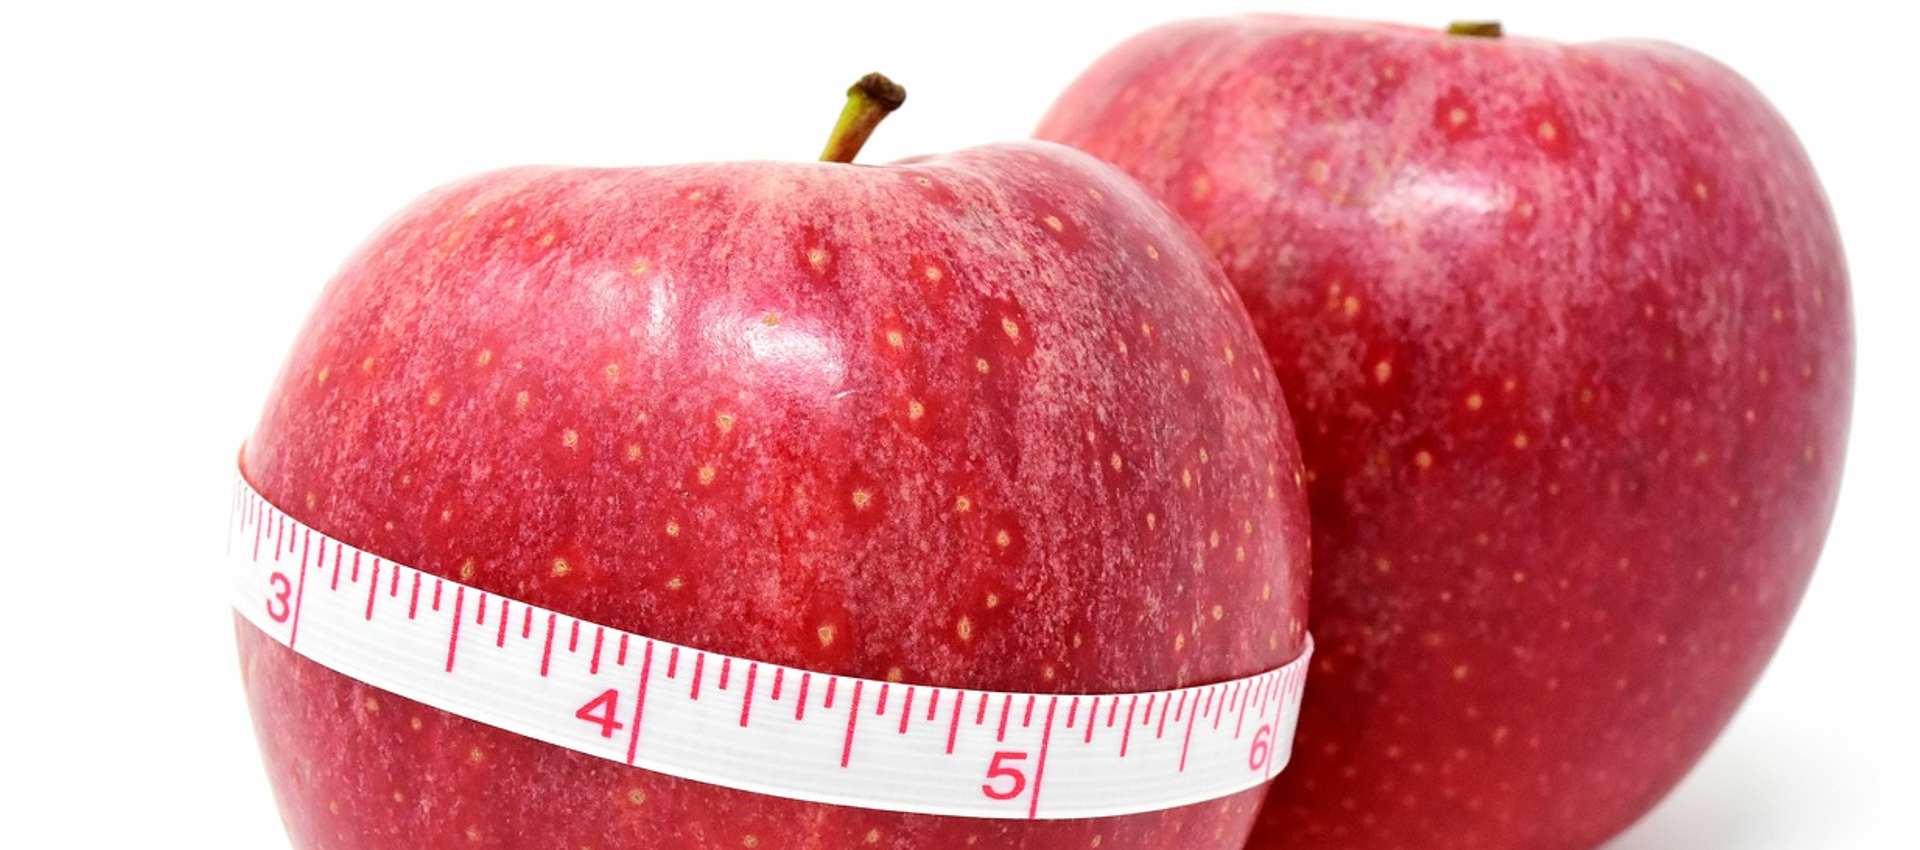 Diete Vs Chirurgia dell’Obesità: perché le prime falliscono?